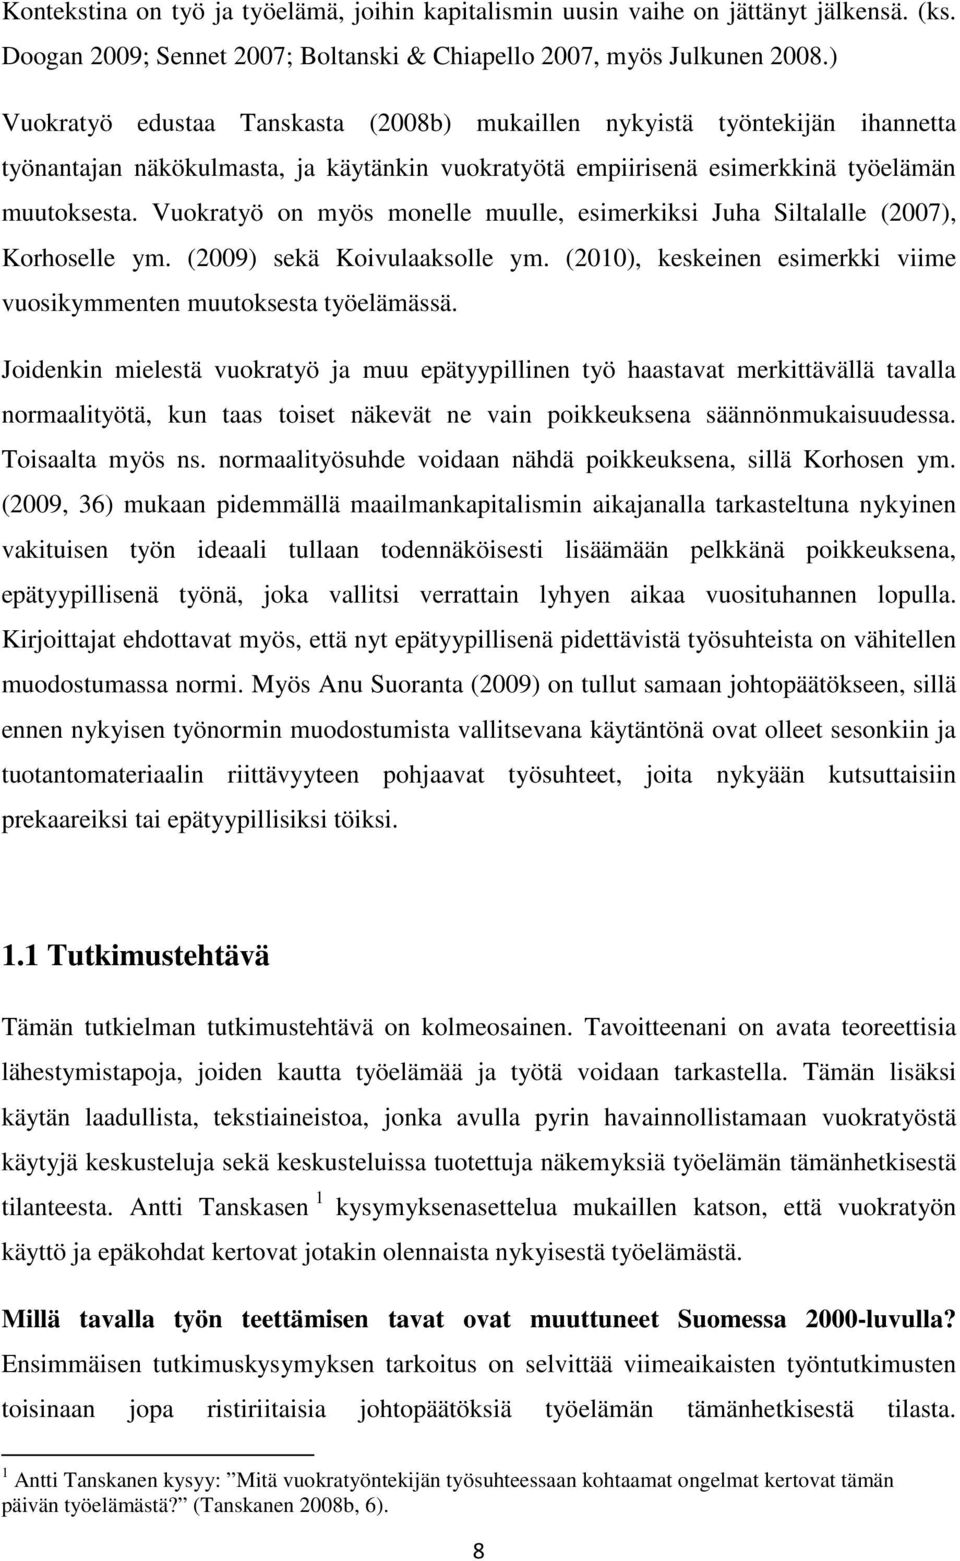 Vuokratyö on myös monelle muulle, esimerkiksi Juha Siltalalle (2007), Korhoselle ym. (2009) sekä Koivulaaksolle ym. (2010), keskeinen esimerkki viime vuosikymmenten muutoksesta työelämässä.